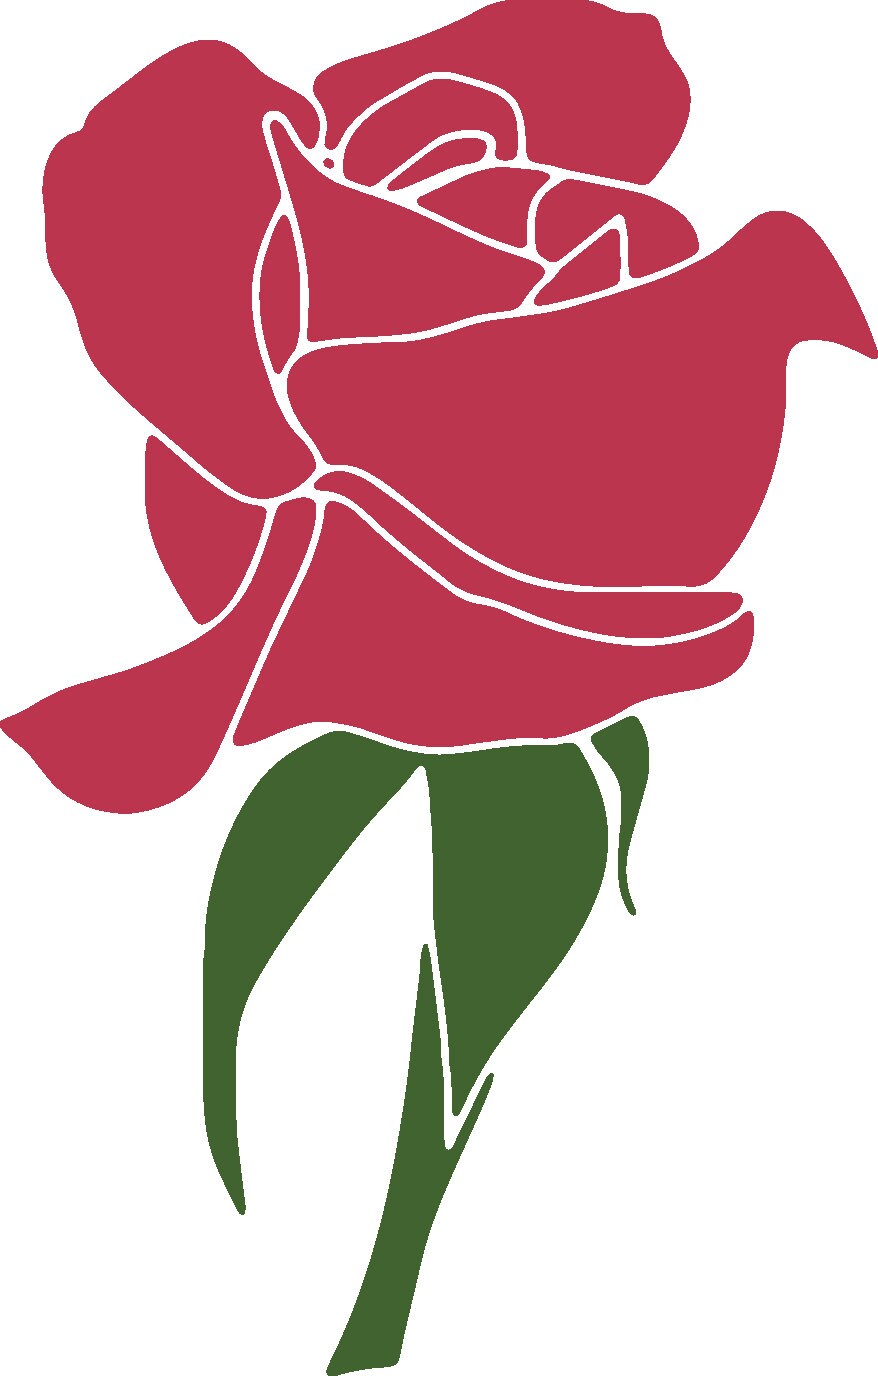 Red rose svgRed Rose Svg bundlerose bud svgrose svg | Etsy